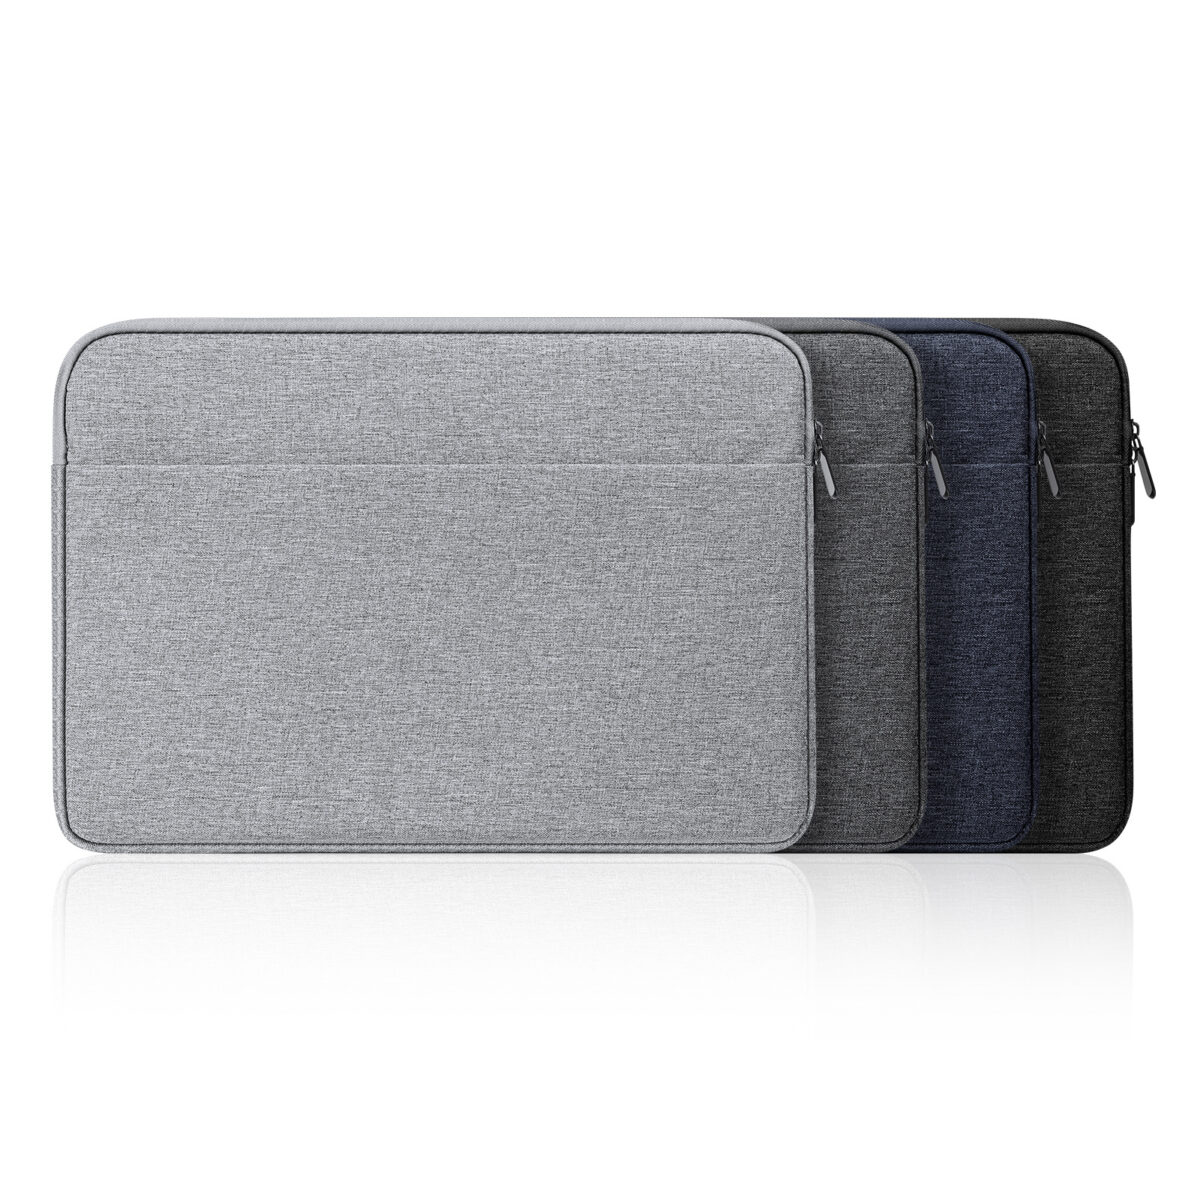 LBDB Series Sleeve for Laptop, MacBook, Notebook, Tablet